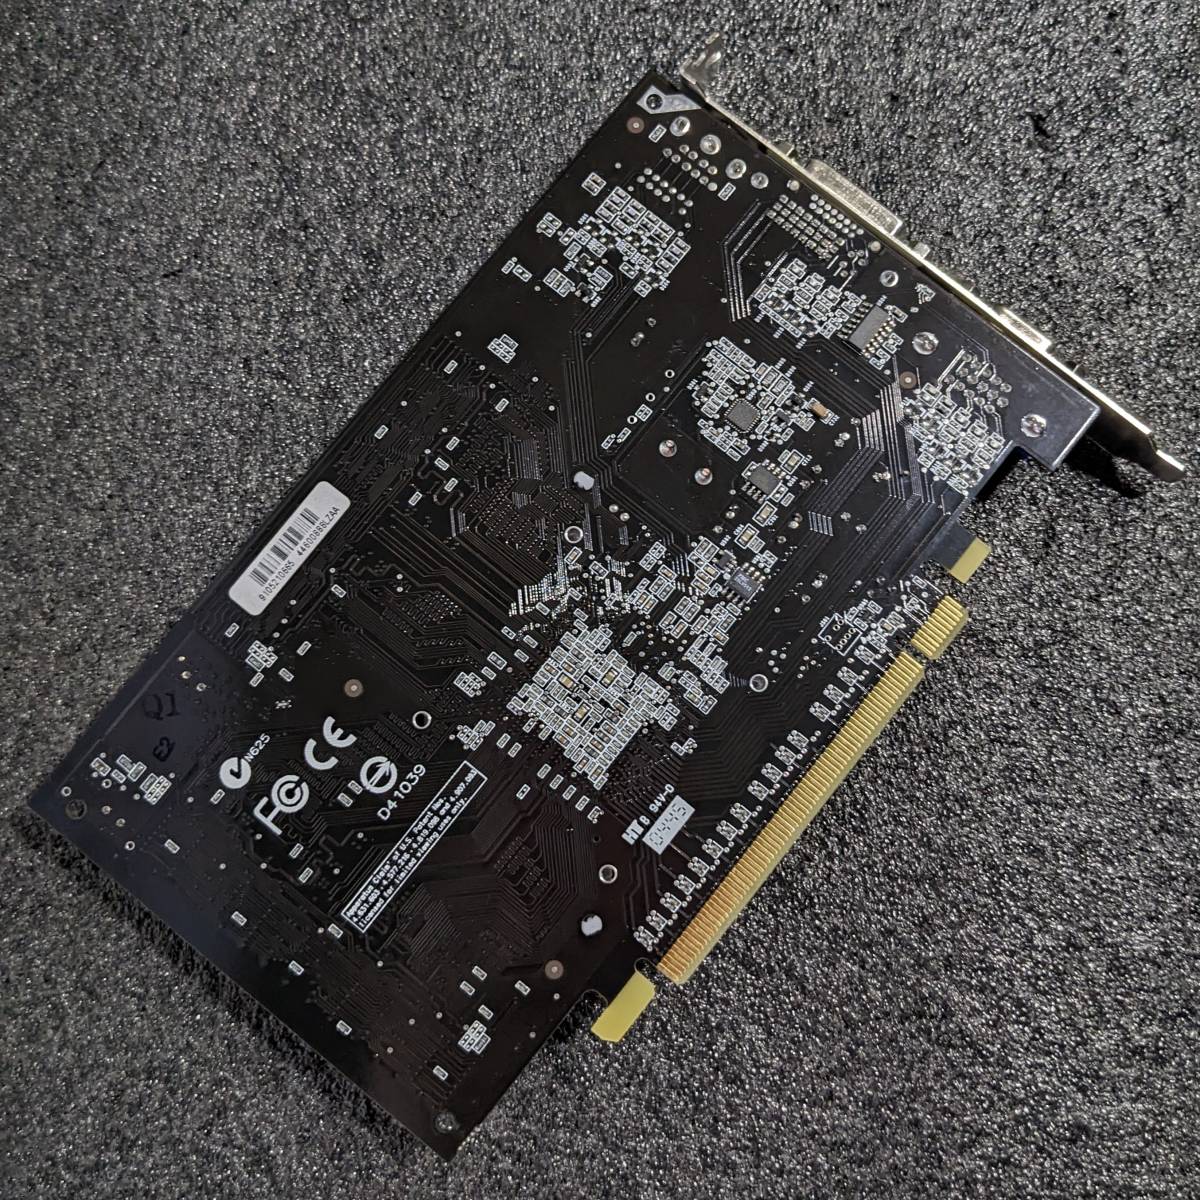 【美品】AOPEN AEOLUS 6600-DV128 PCI-E GeForce 6600 128MB 64-bit DDR PCI Express x16